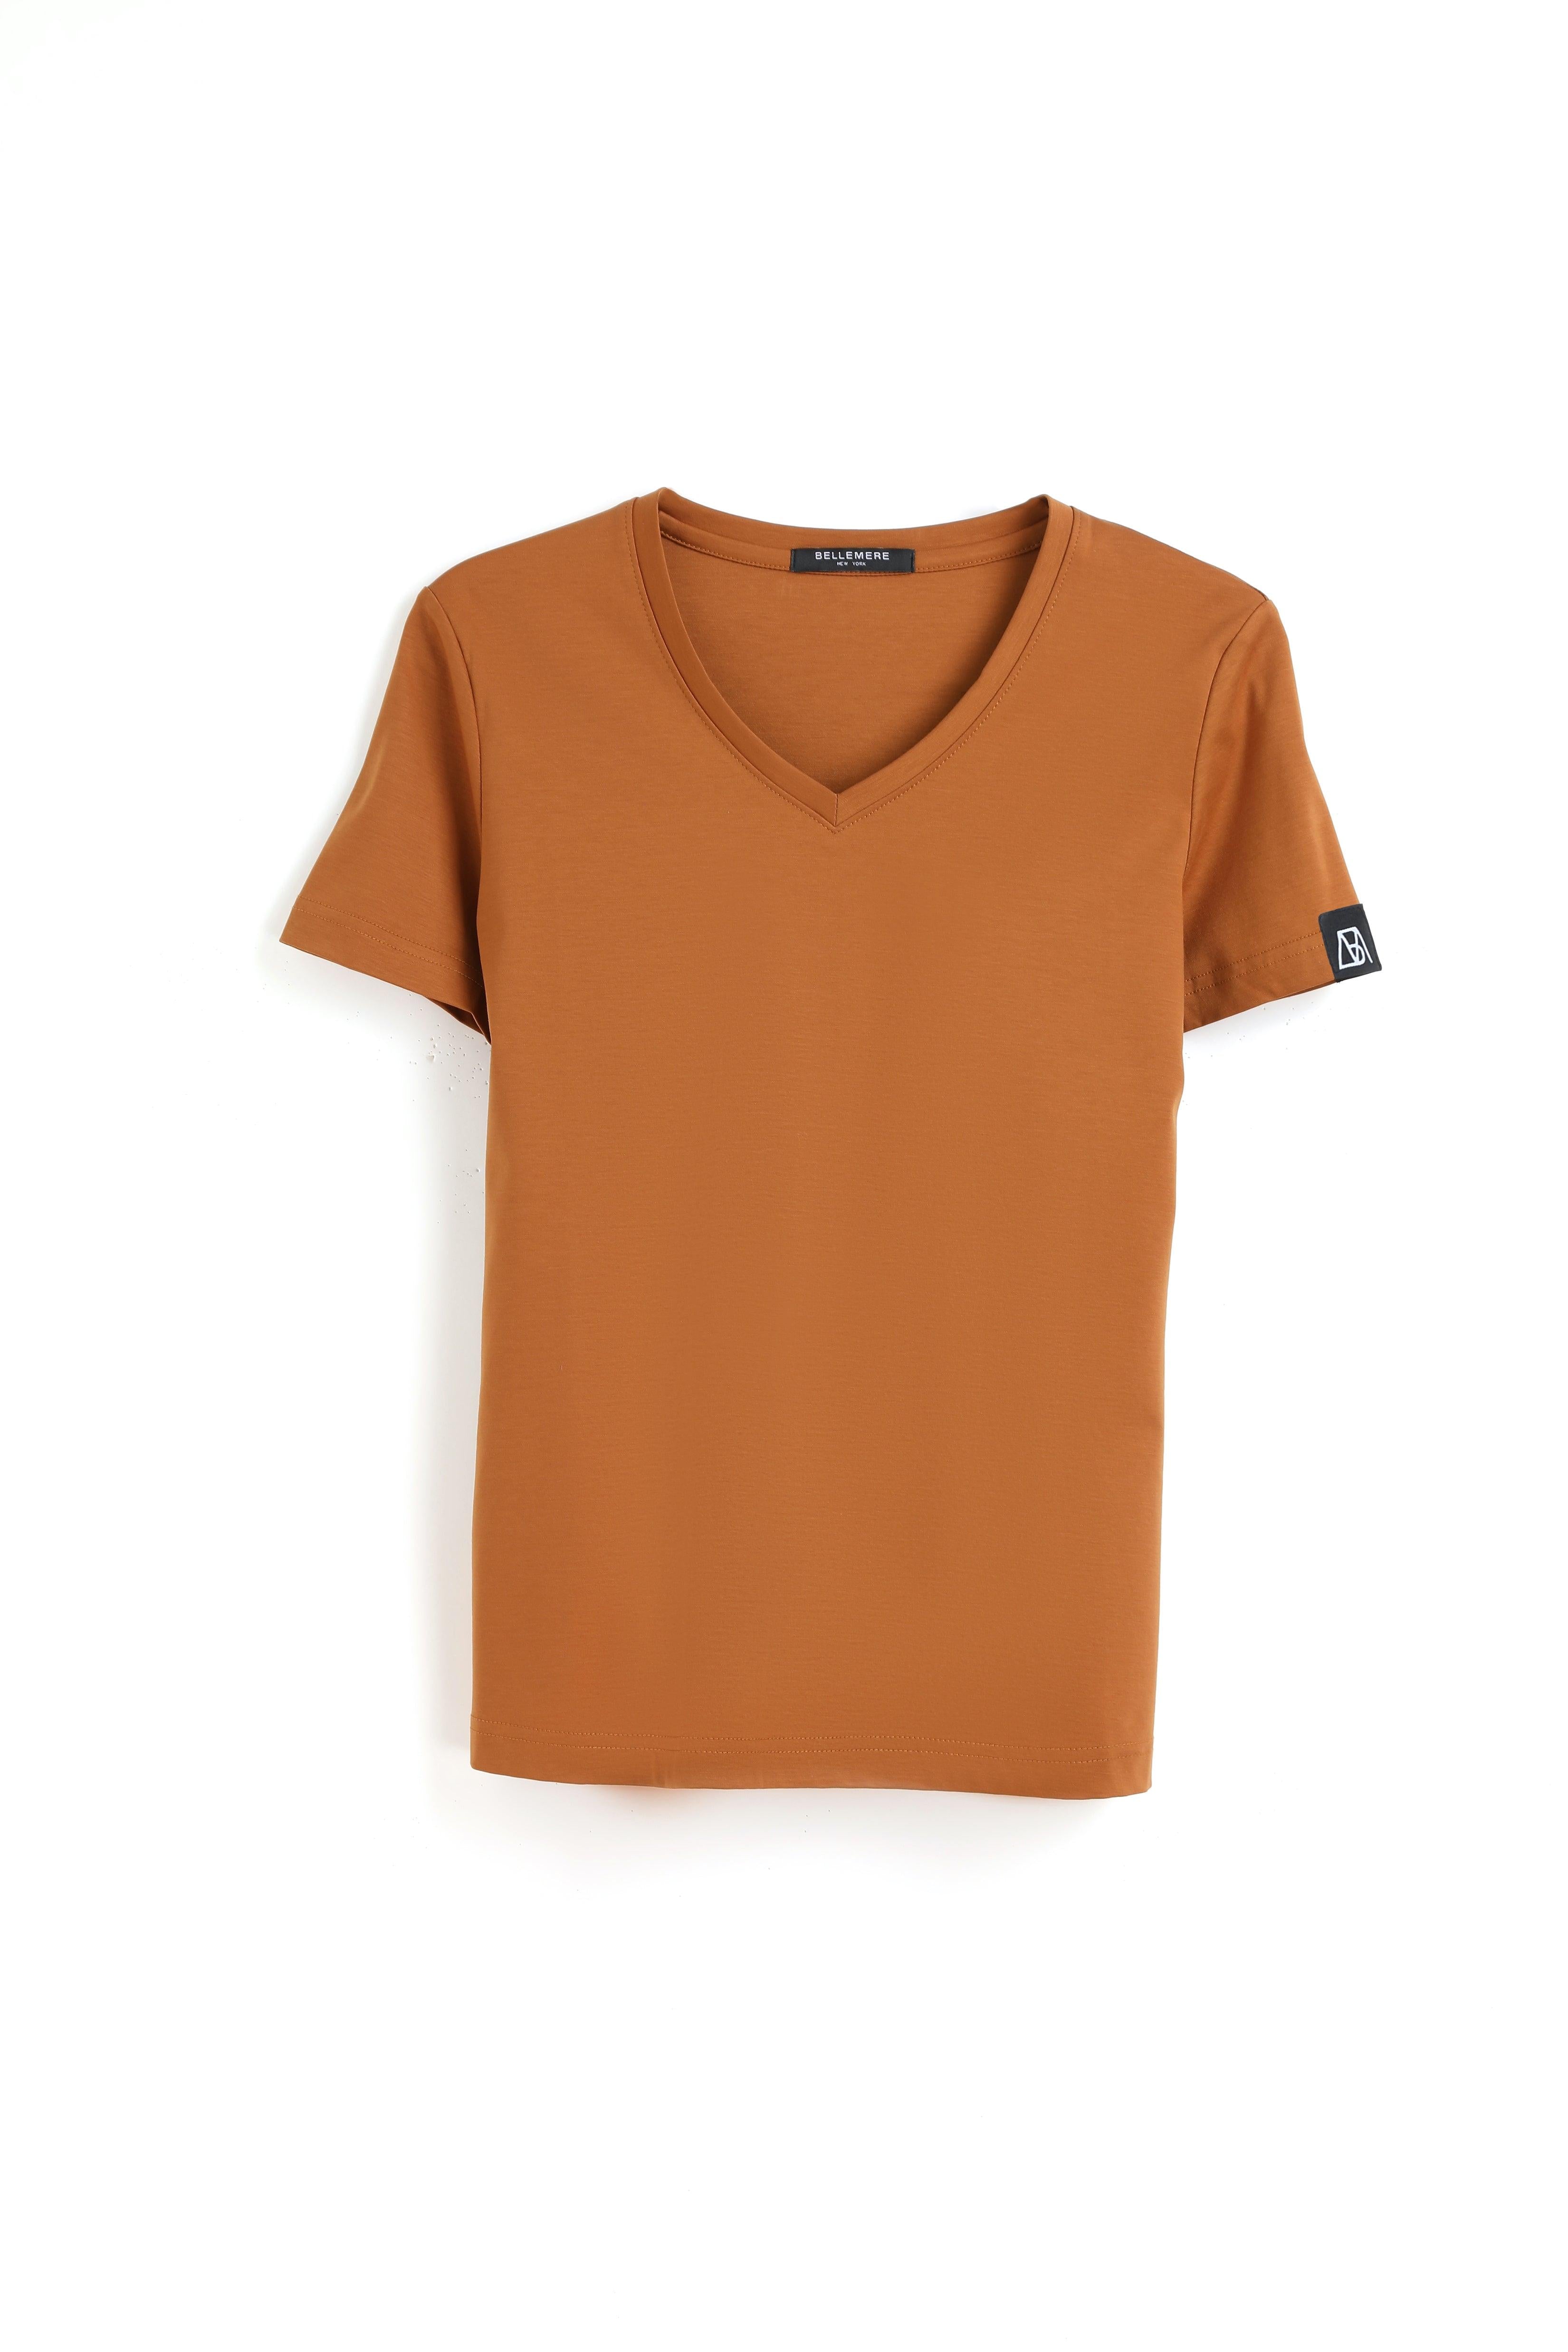 190g Mercerized Cotton Women V Neck T-shirt - Bellemere New York 